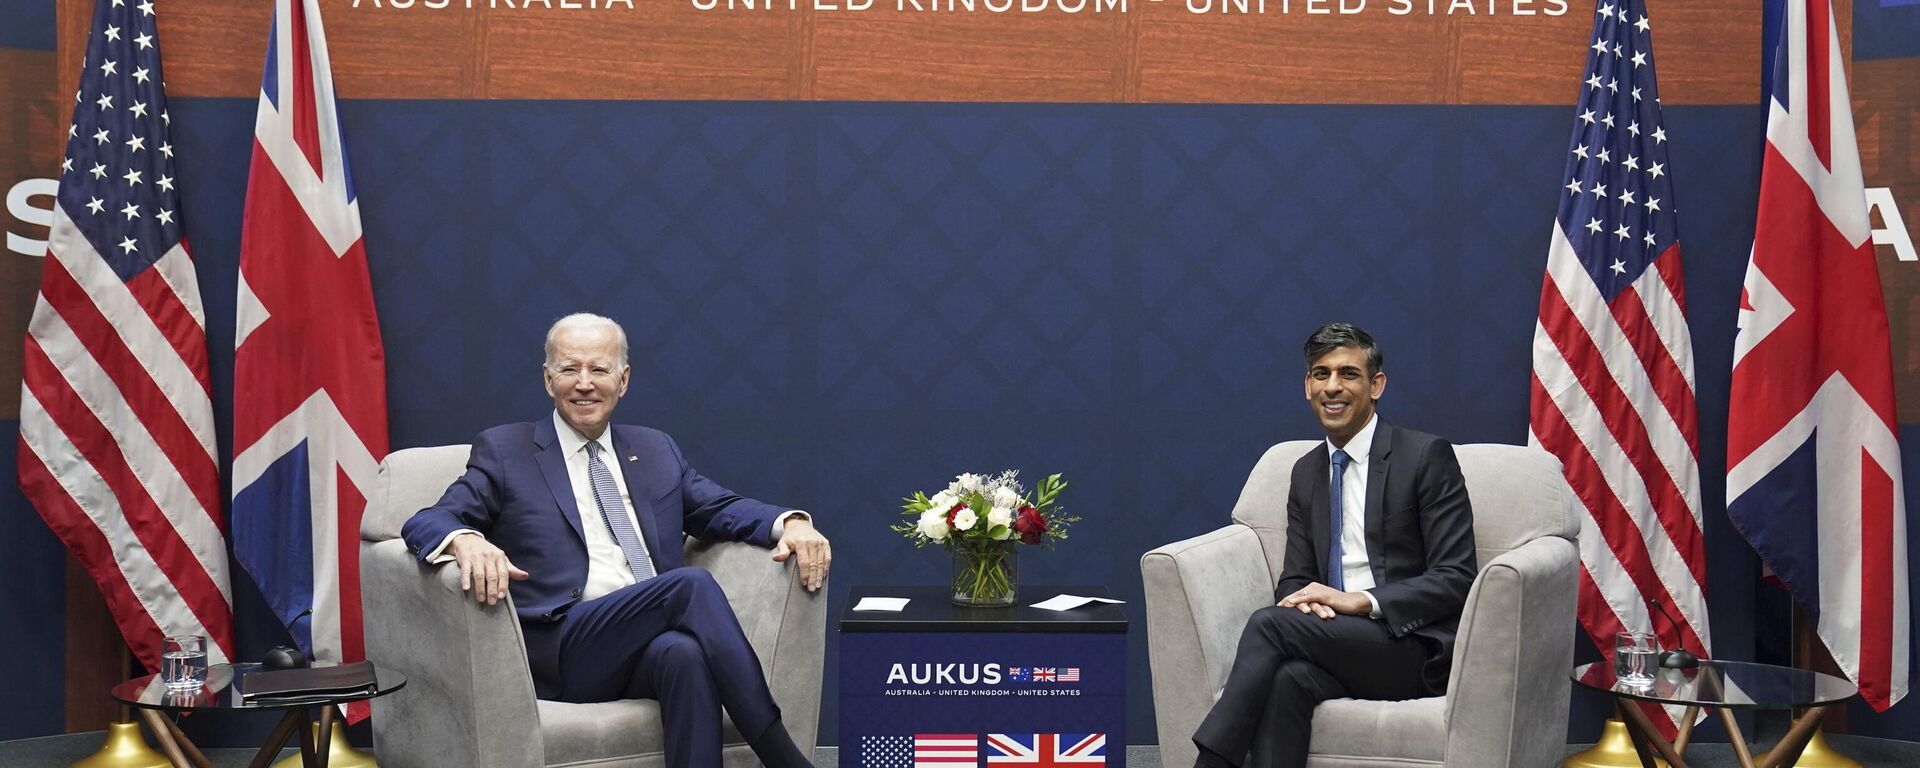 O primeiro-ministro britânico Rishi Sunak, à direita, durante conversações bilaterais com o presidente norte-americano Joe Biden na base naval de Point Loma em San Diego, EUA, na segunda-feira, 13 de março de 2023, como parte do AUKUS, um pacto trilateral de segurança entre a Austrália, o Reino Unido e os EUA. - Sputnik Brasil, 1920, 14.03.2023